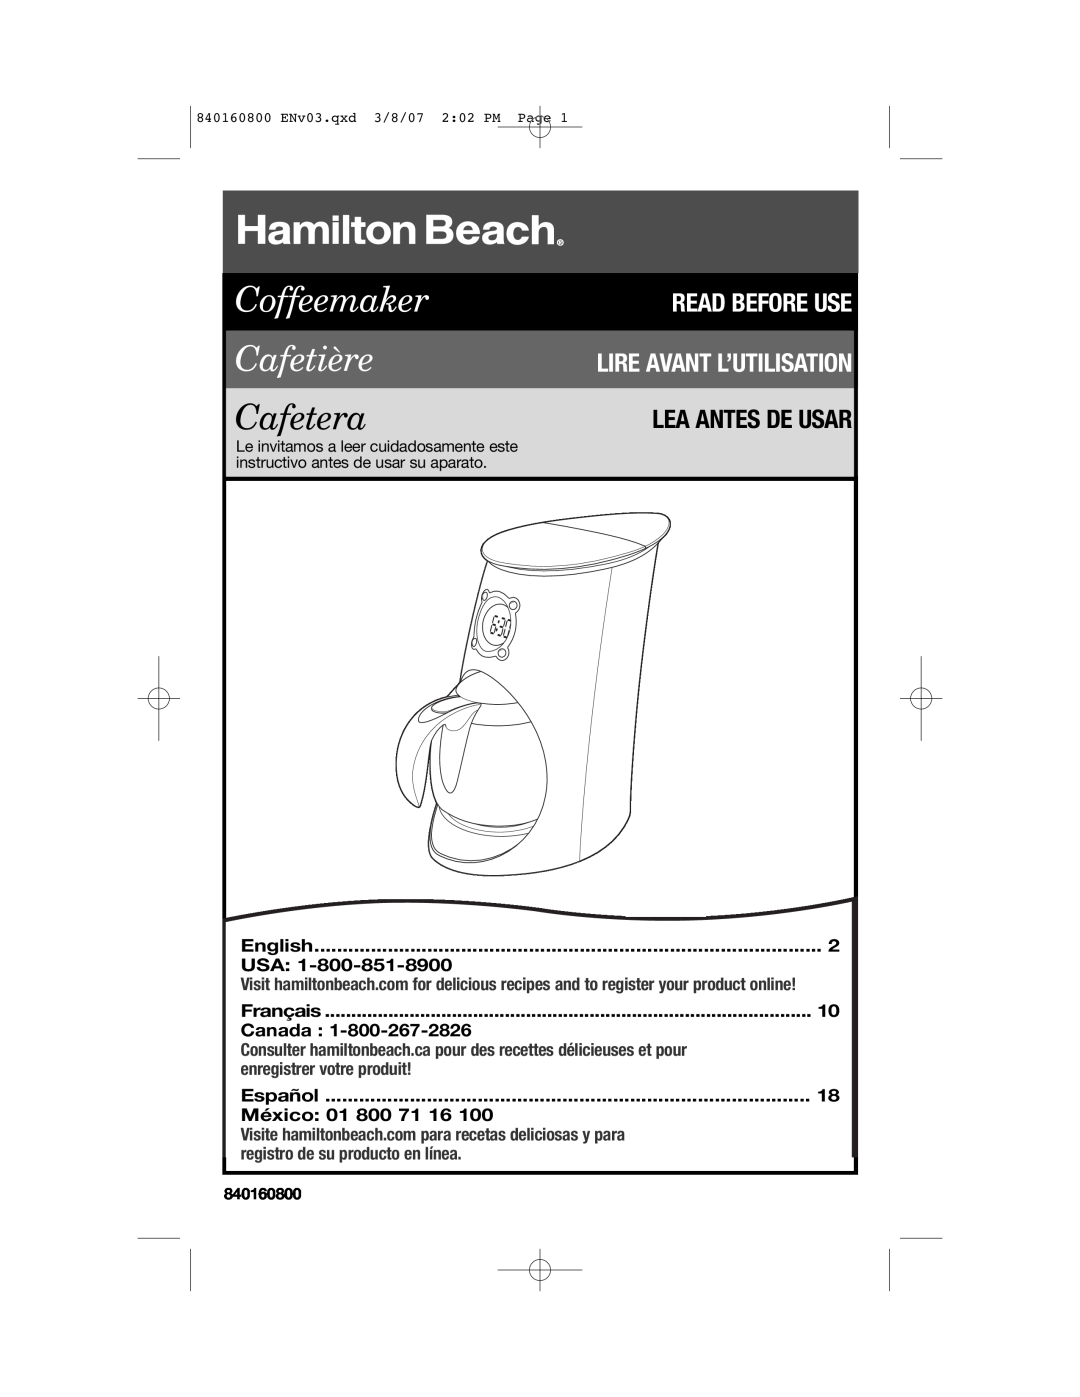 Hamilton Beach 840160800 manual Lea Antes De Usar, English, Français, Canada, Español, México, Coffeemaker Cafetière 